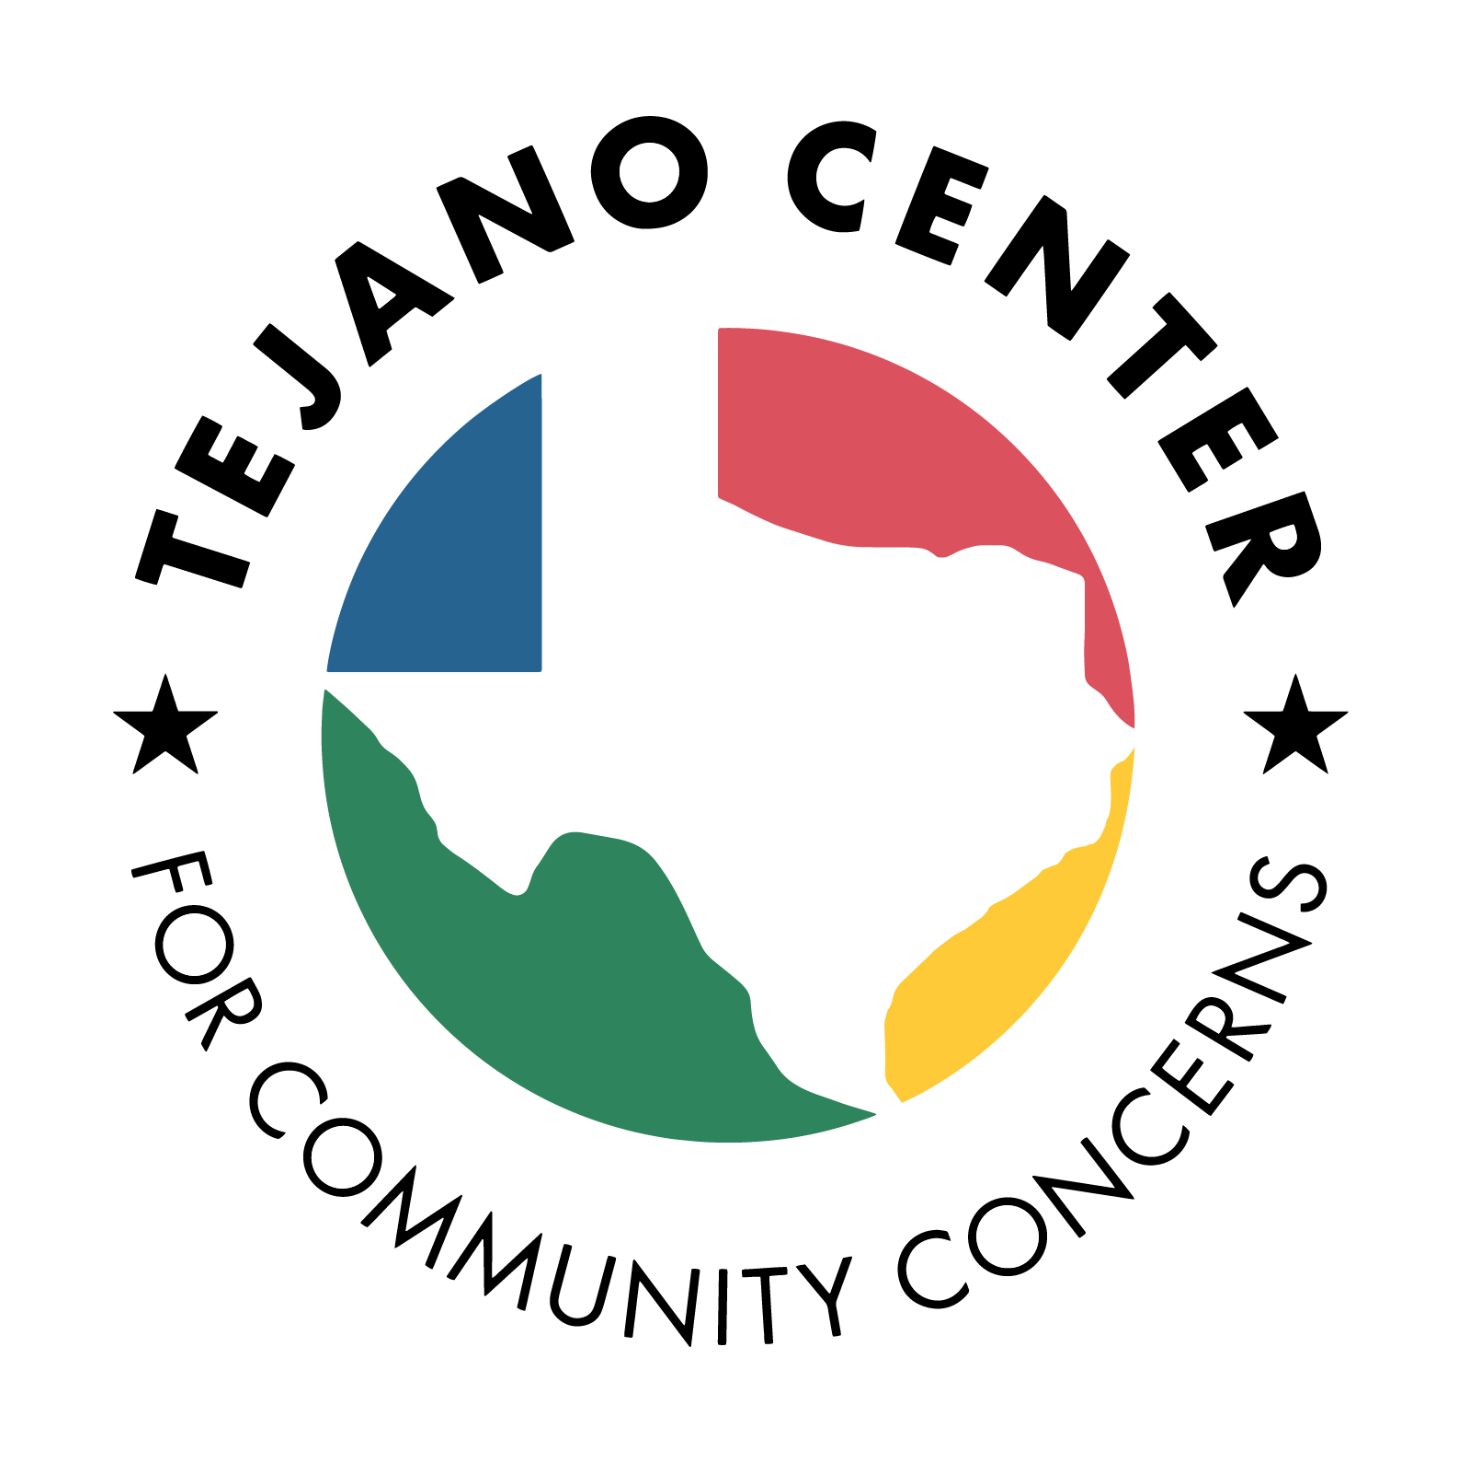 Tejano Center for Community Concerns logo